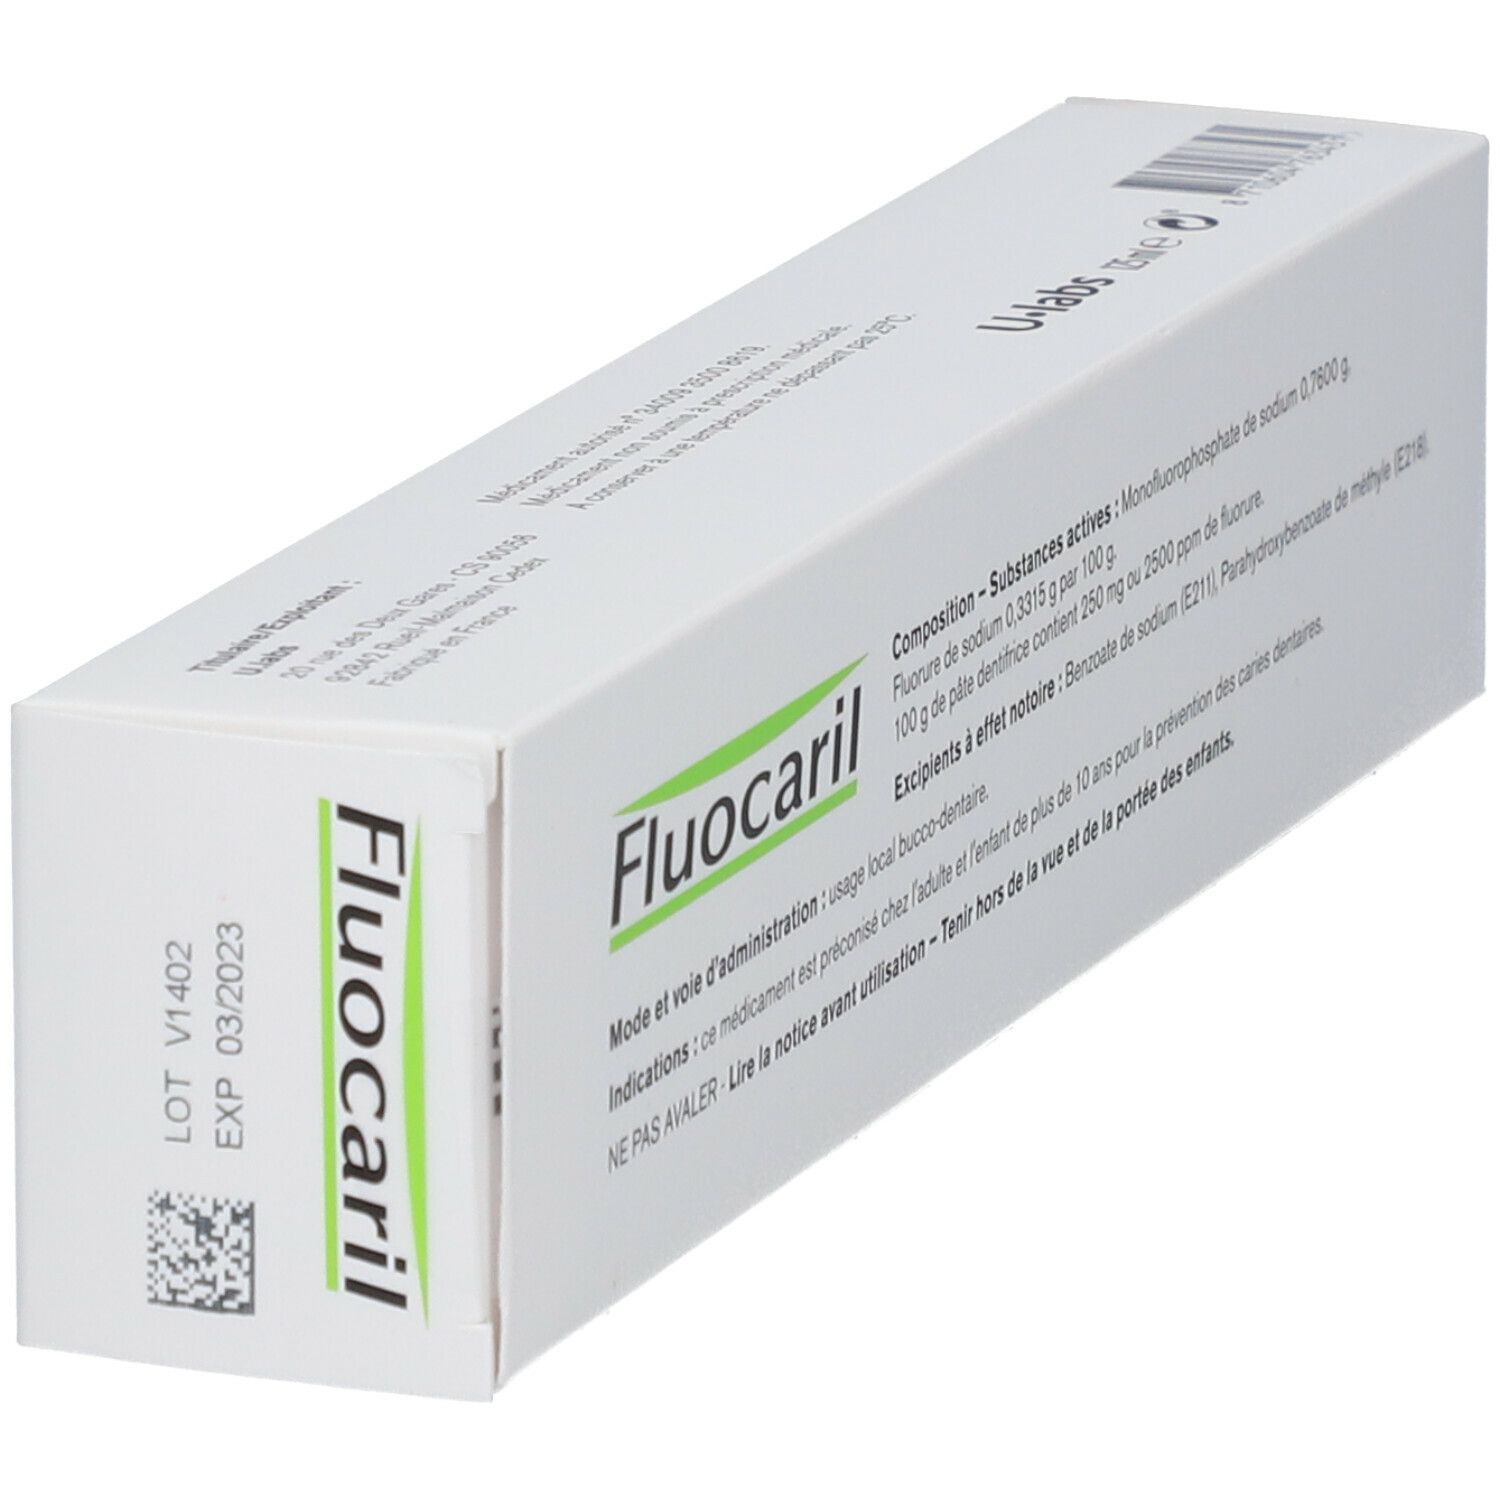 Fluocaril Bi-Fluoré 250 mg Pâte Dentifrice Menthe